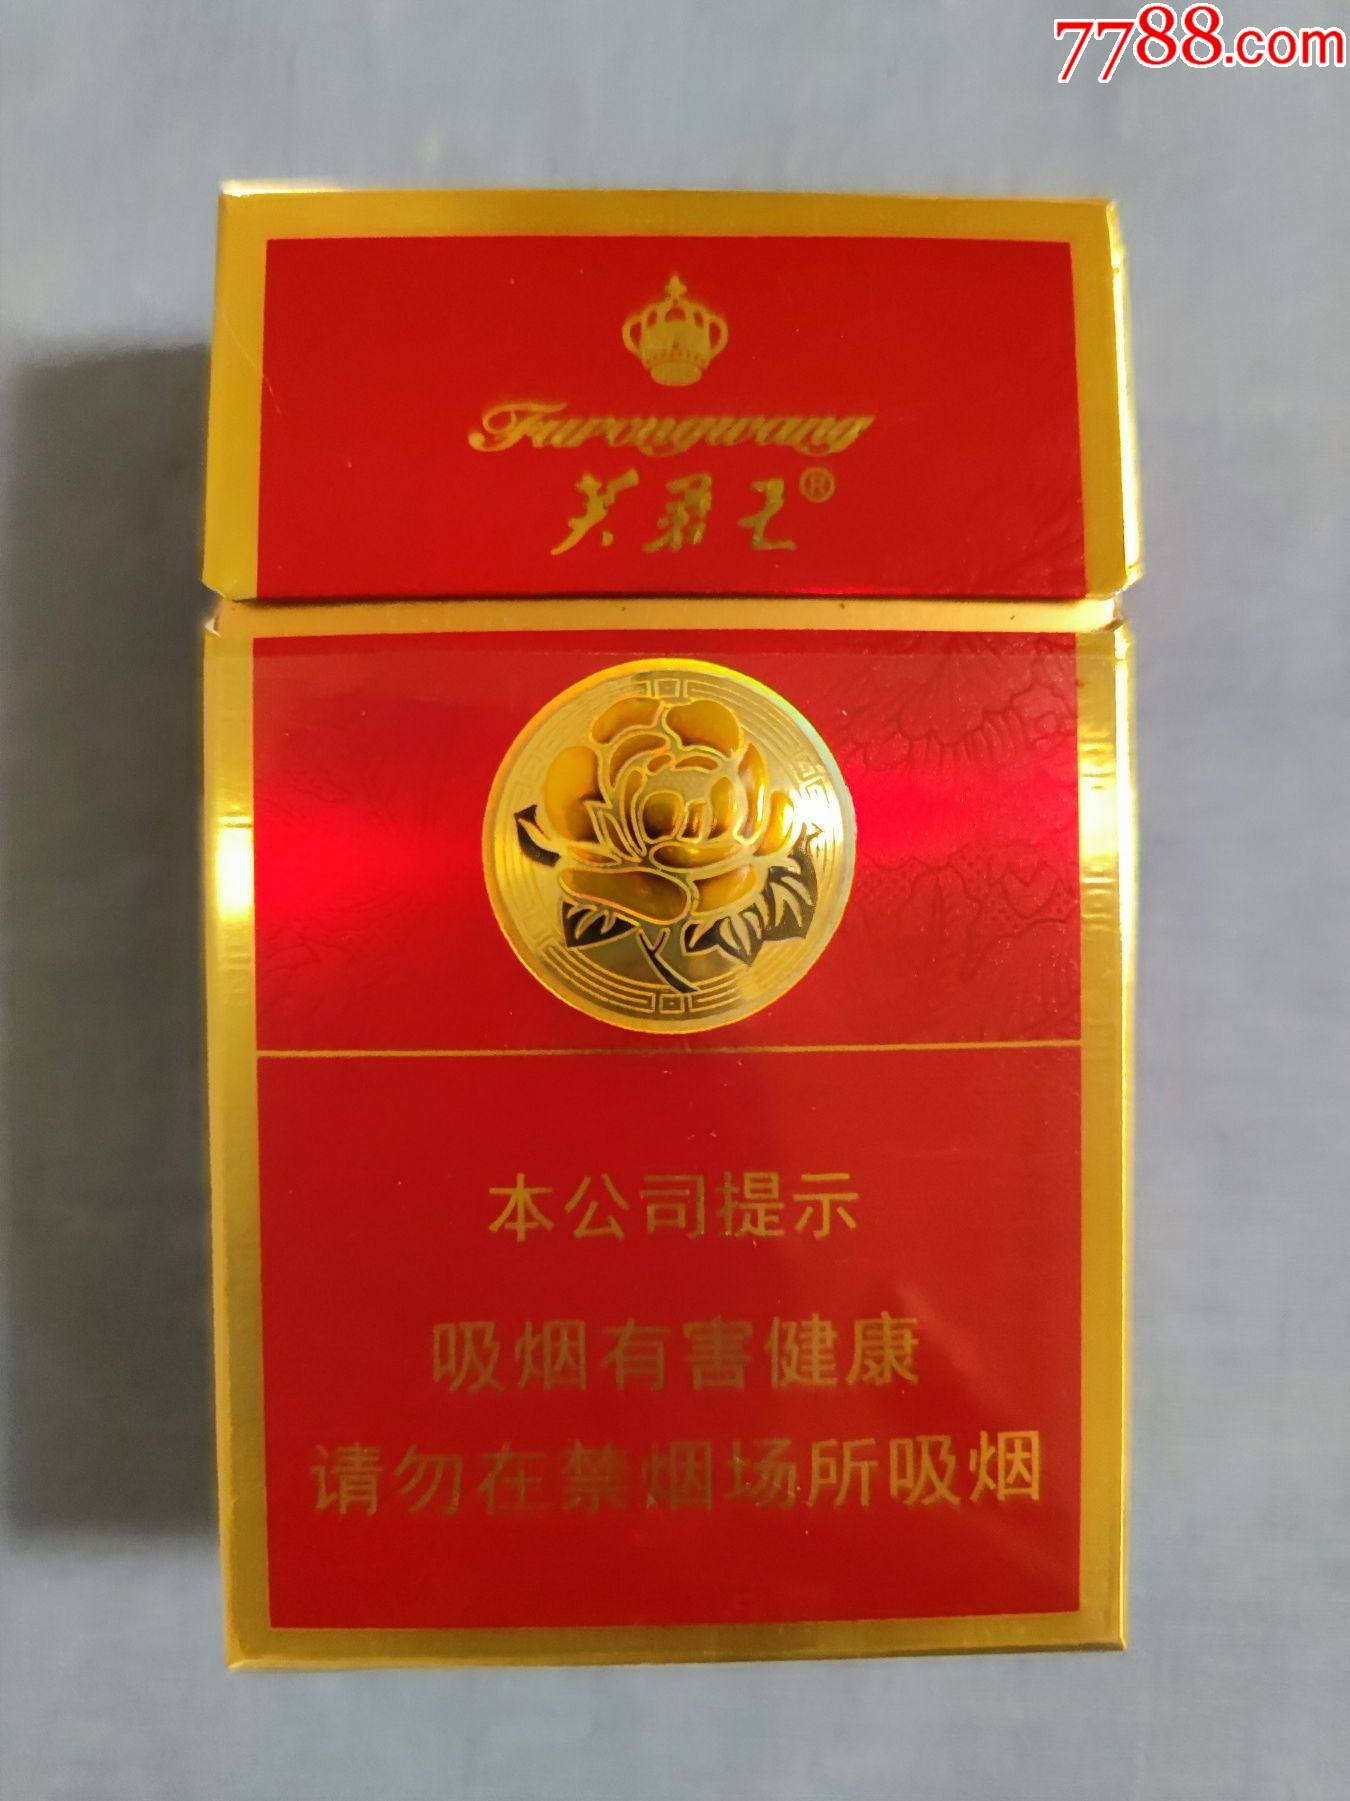 芙蓉王烟品种大全图片